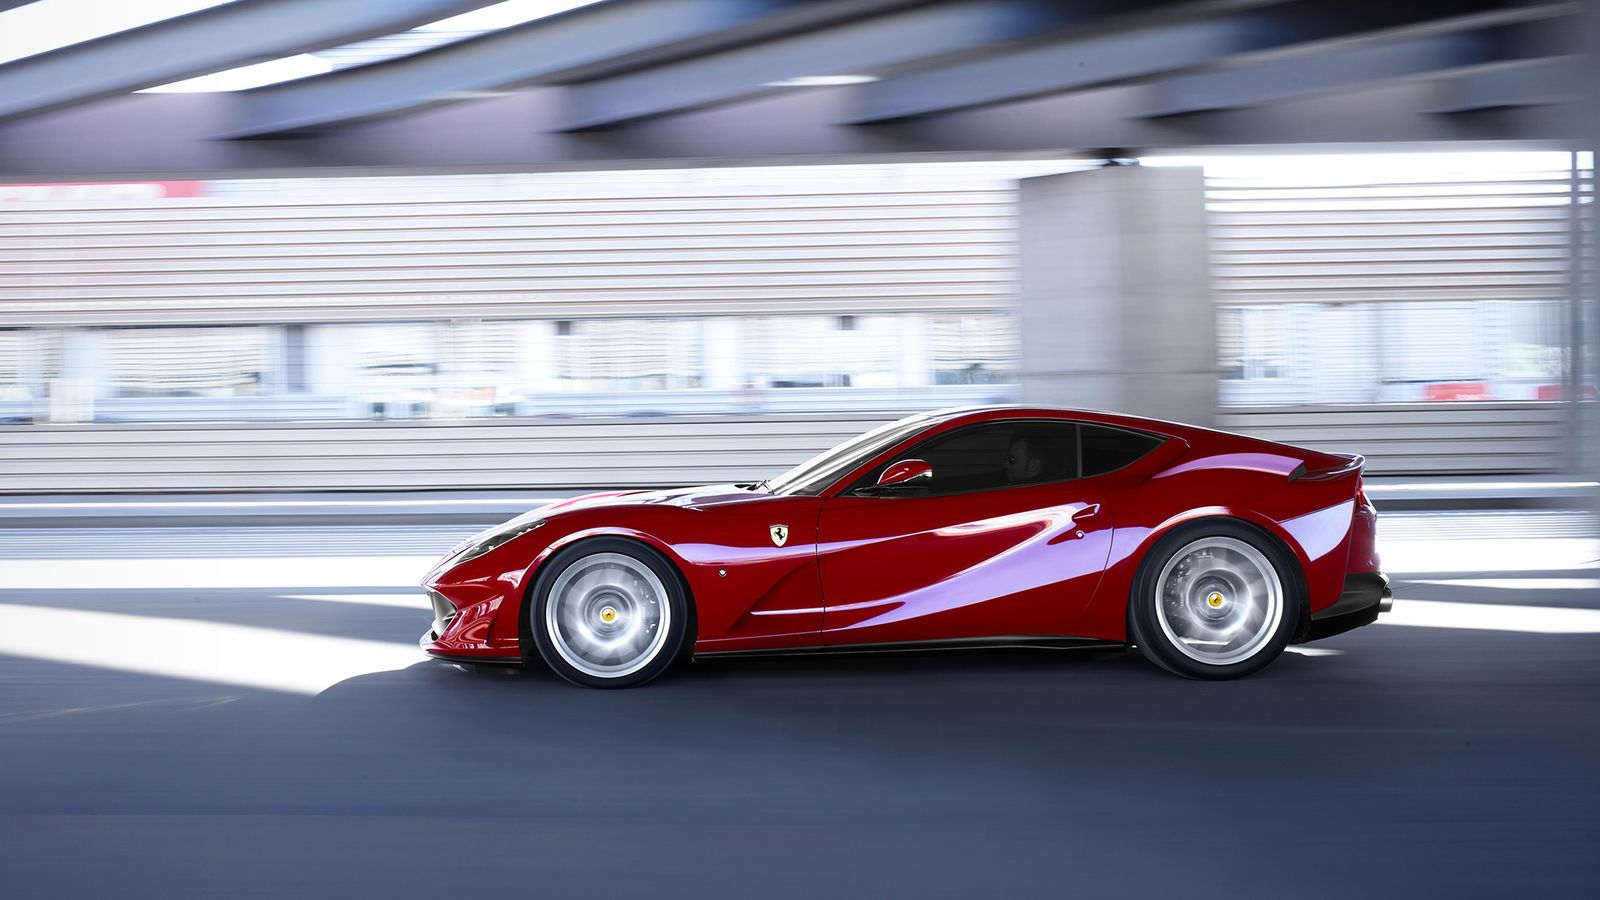  Ferrari  812  Superfast  2021 Daftar Harga  Spesifikasi 